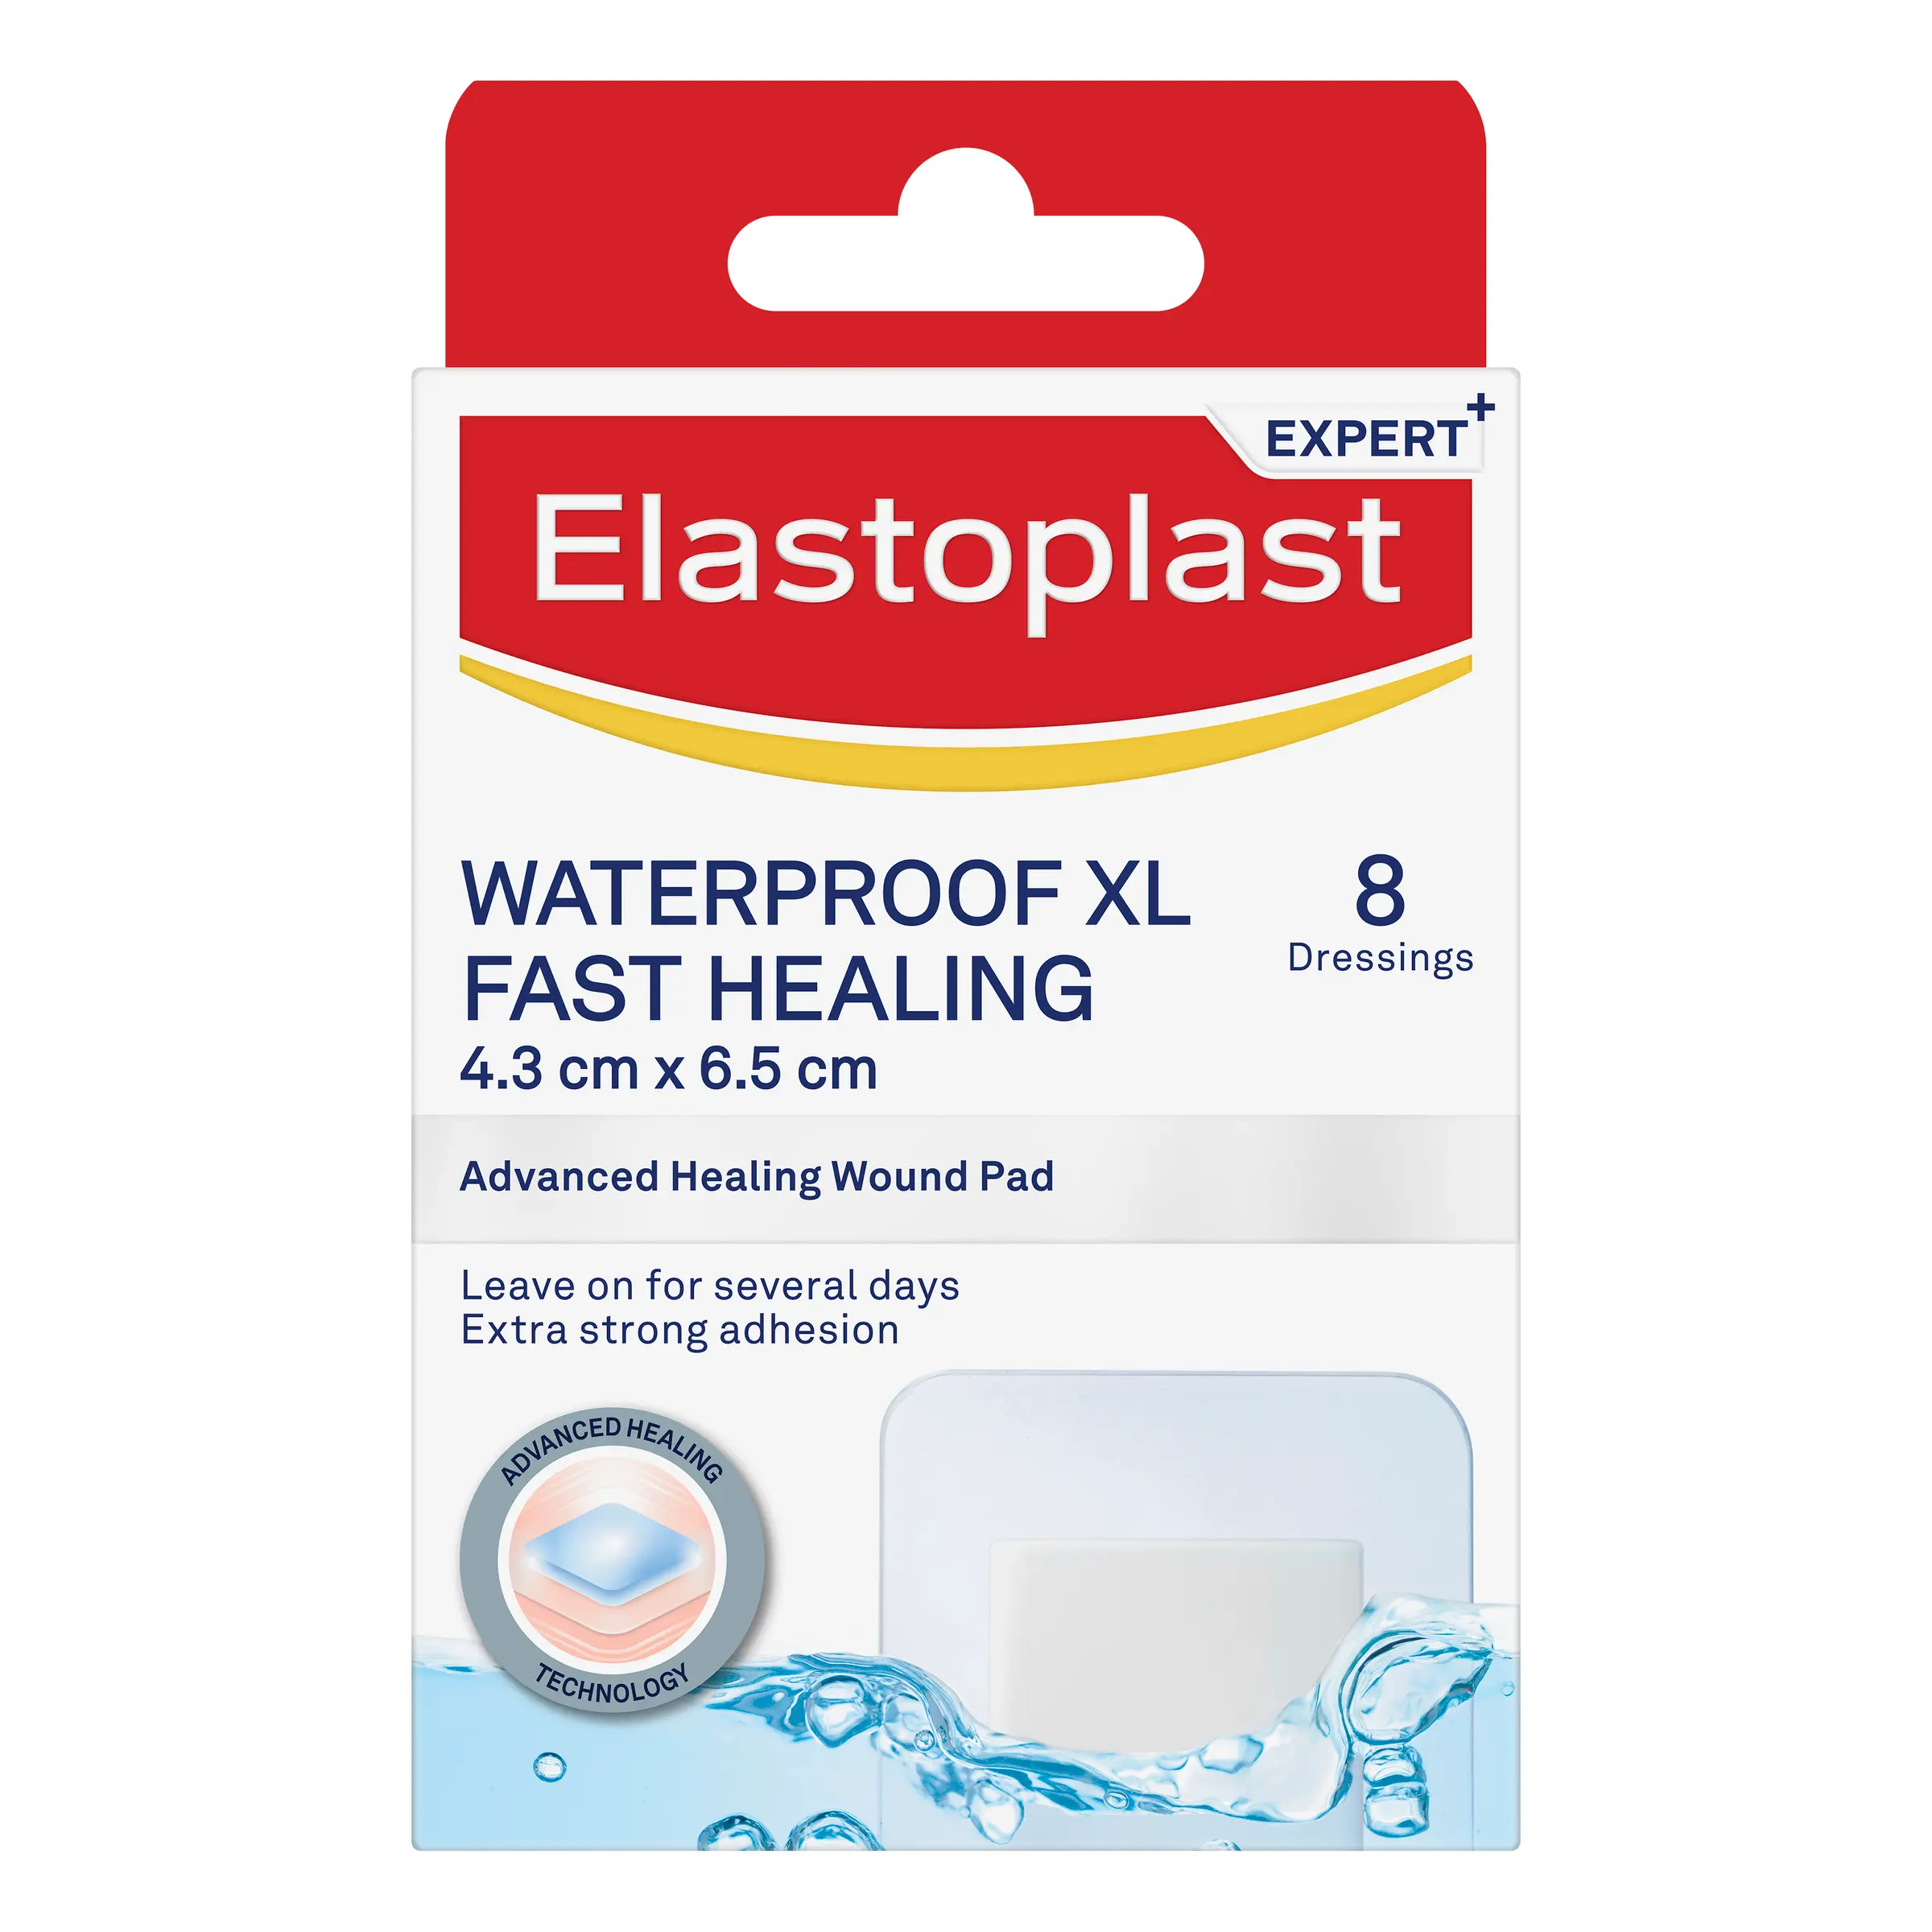 Waterproof XL Fast Healing Plaster